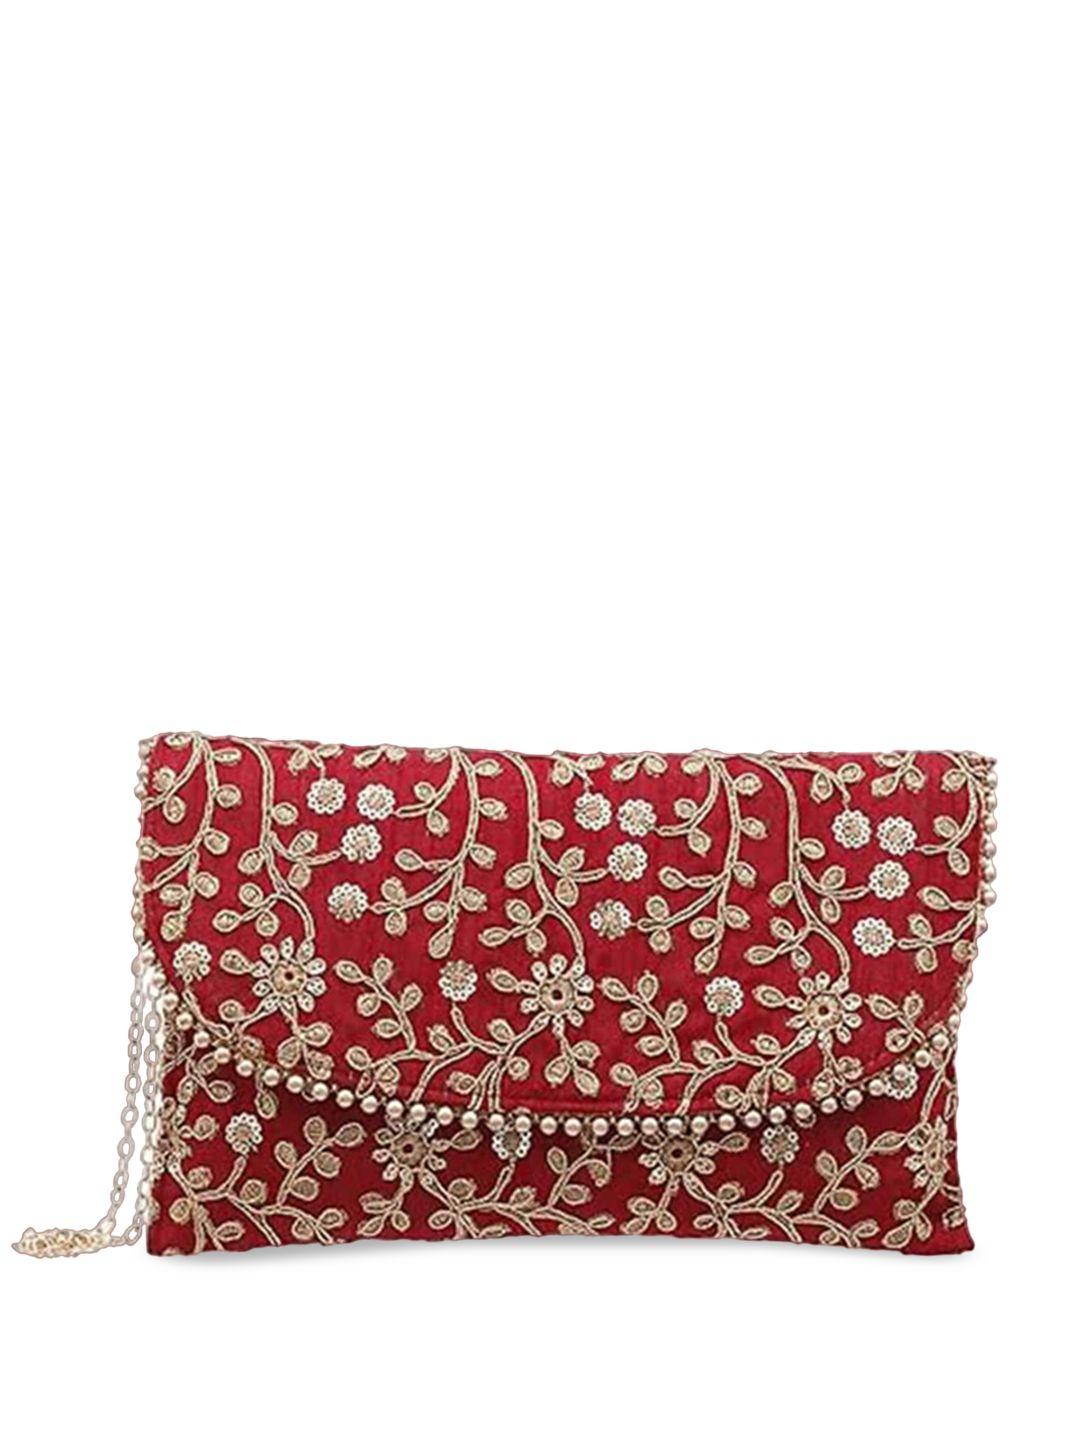 kuber industries embellished embroidered sling bag